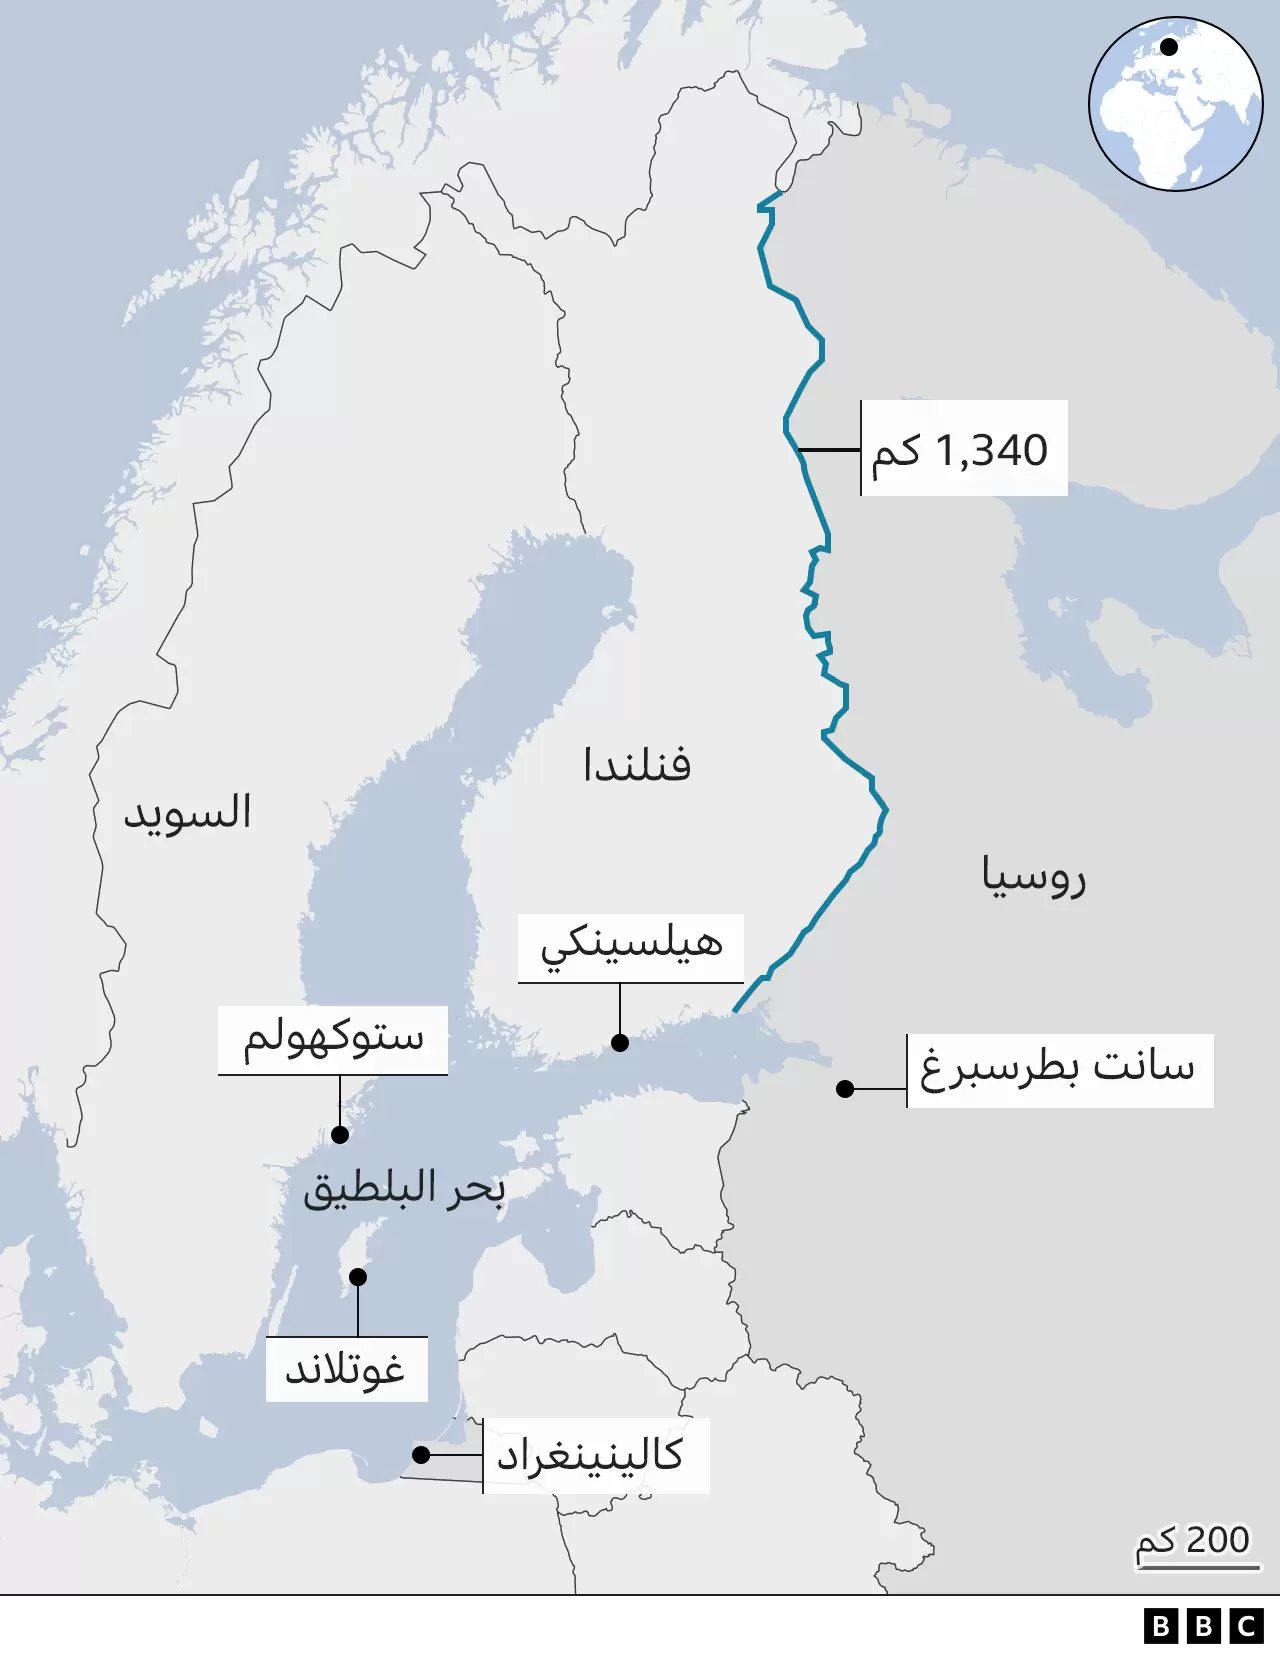 الحدود المشتركة بين روسيا وفنلندا يبلغ طولها 1300 كيلو متر